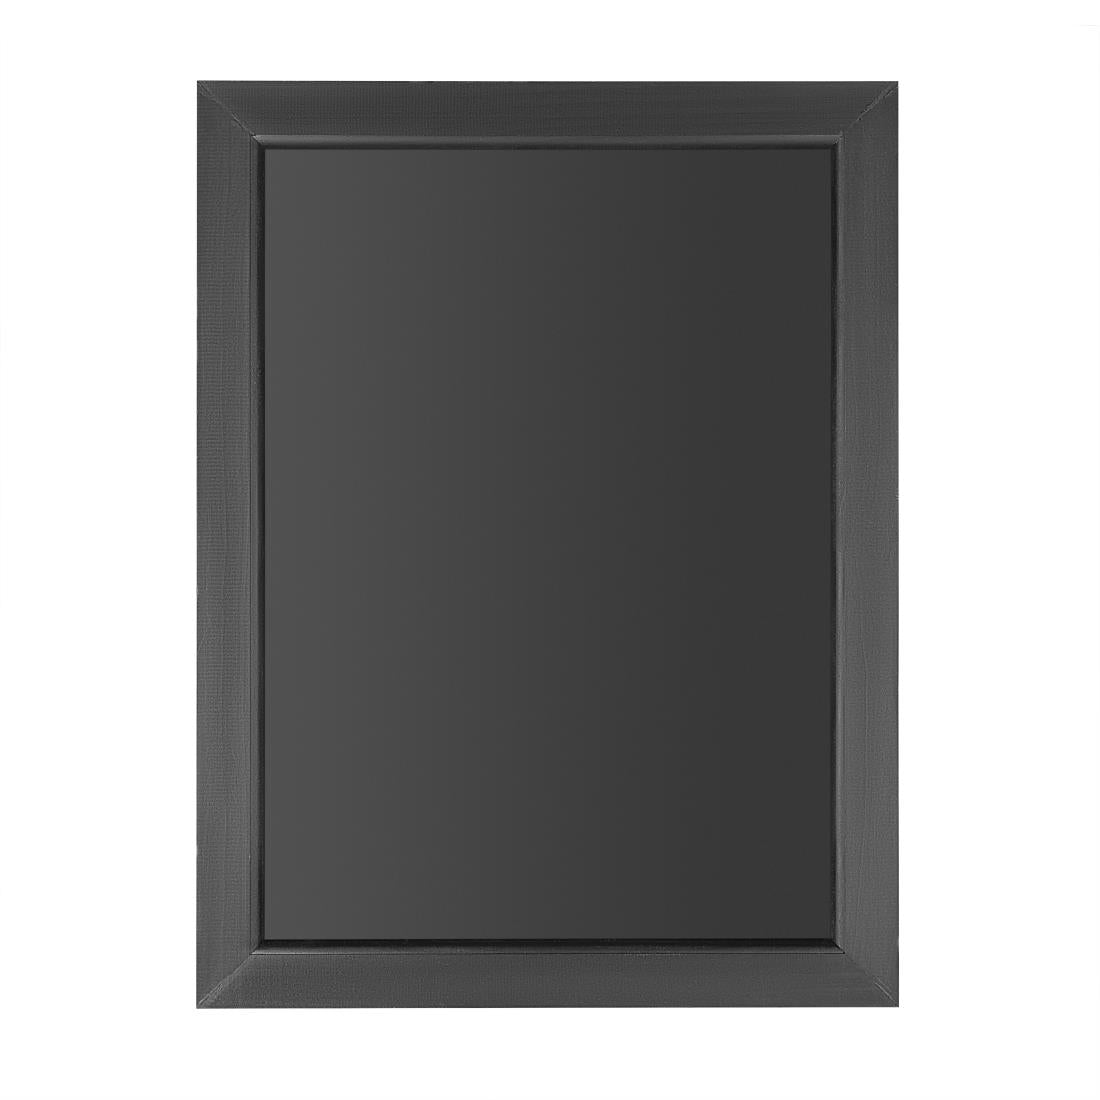 CU990 Olympia Wallboard Black Wooden Frame 450x600mm